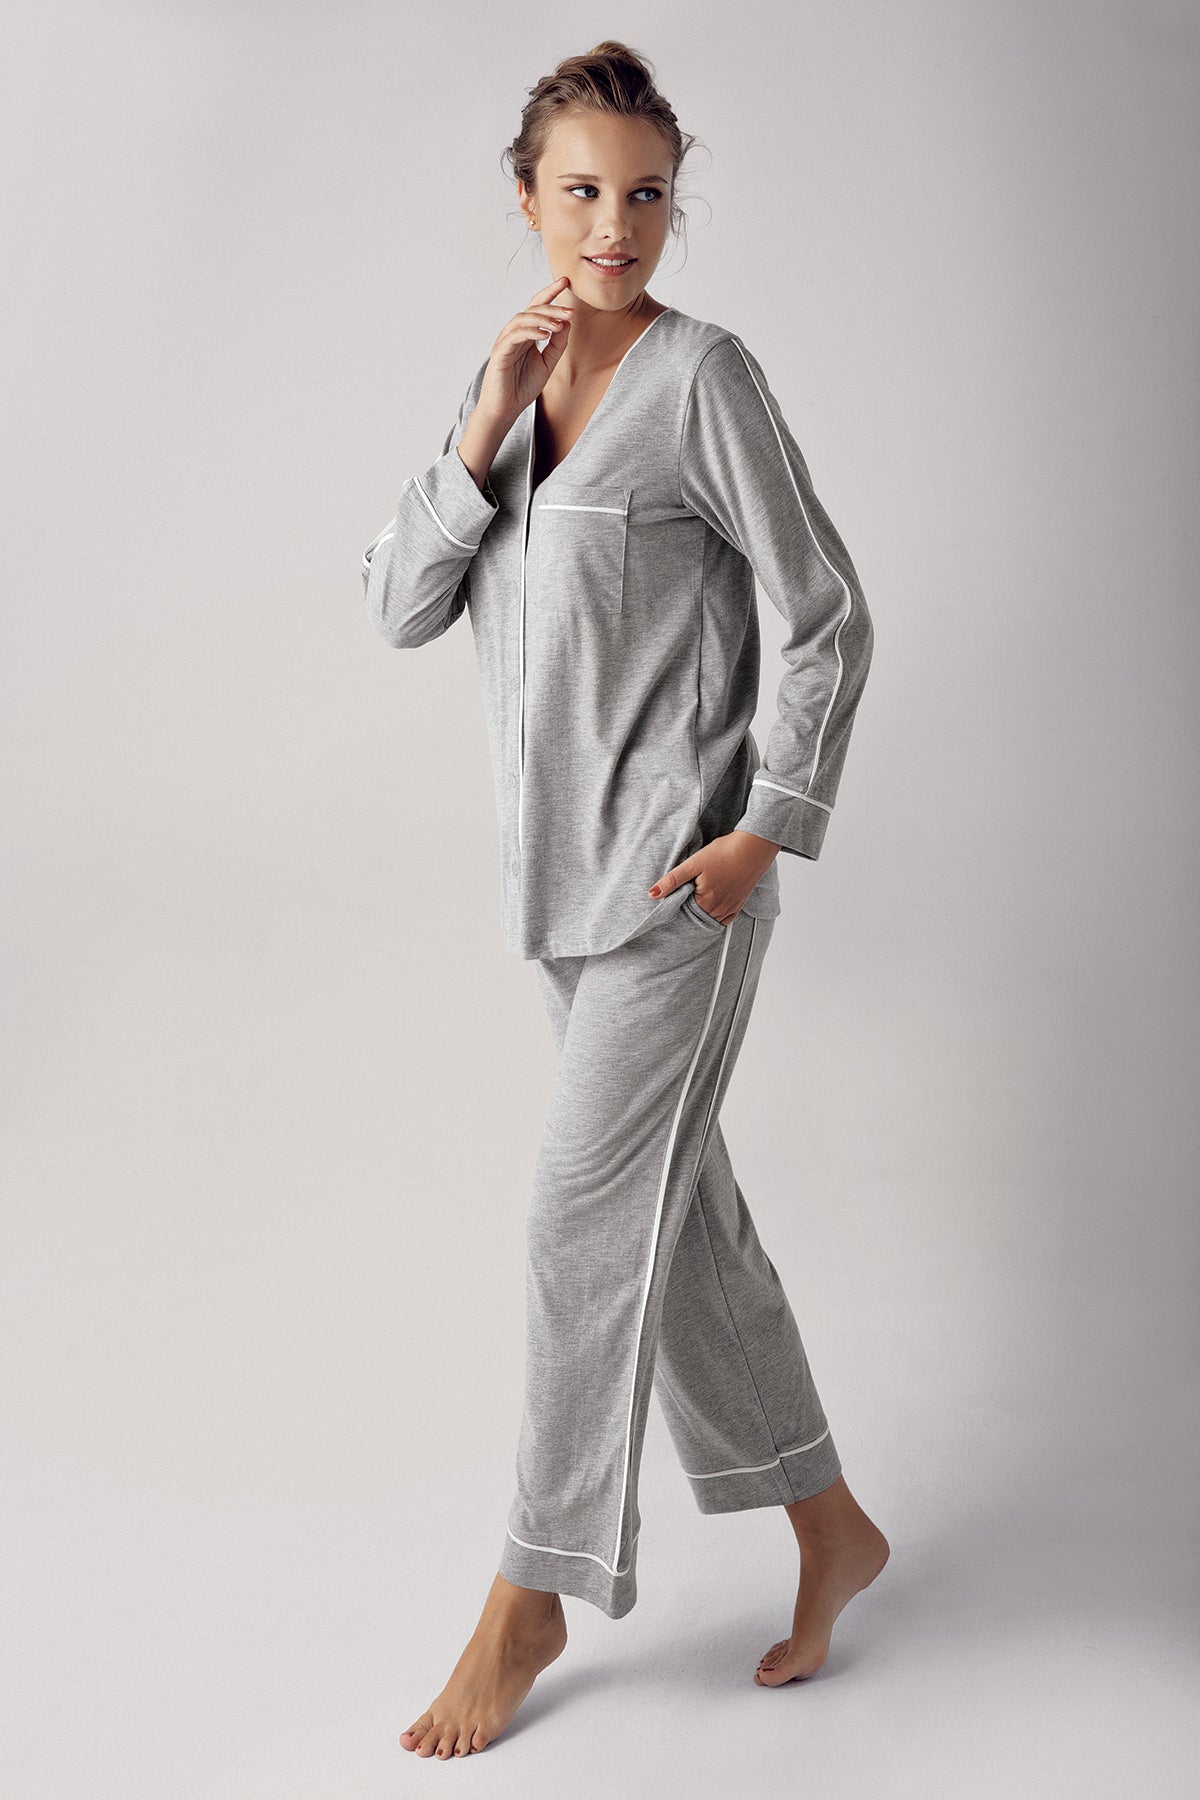 Shopymommy 13202 Melange Cotton Maternity & Nursing Pajamas Grey